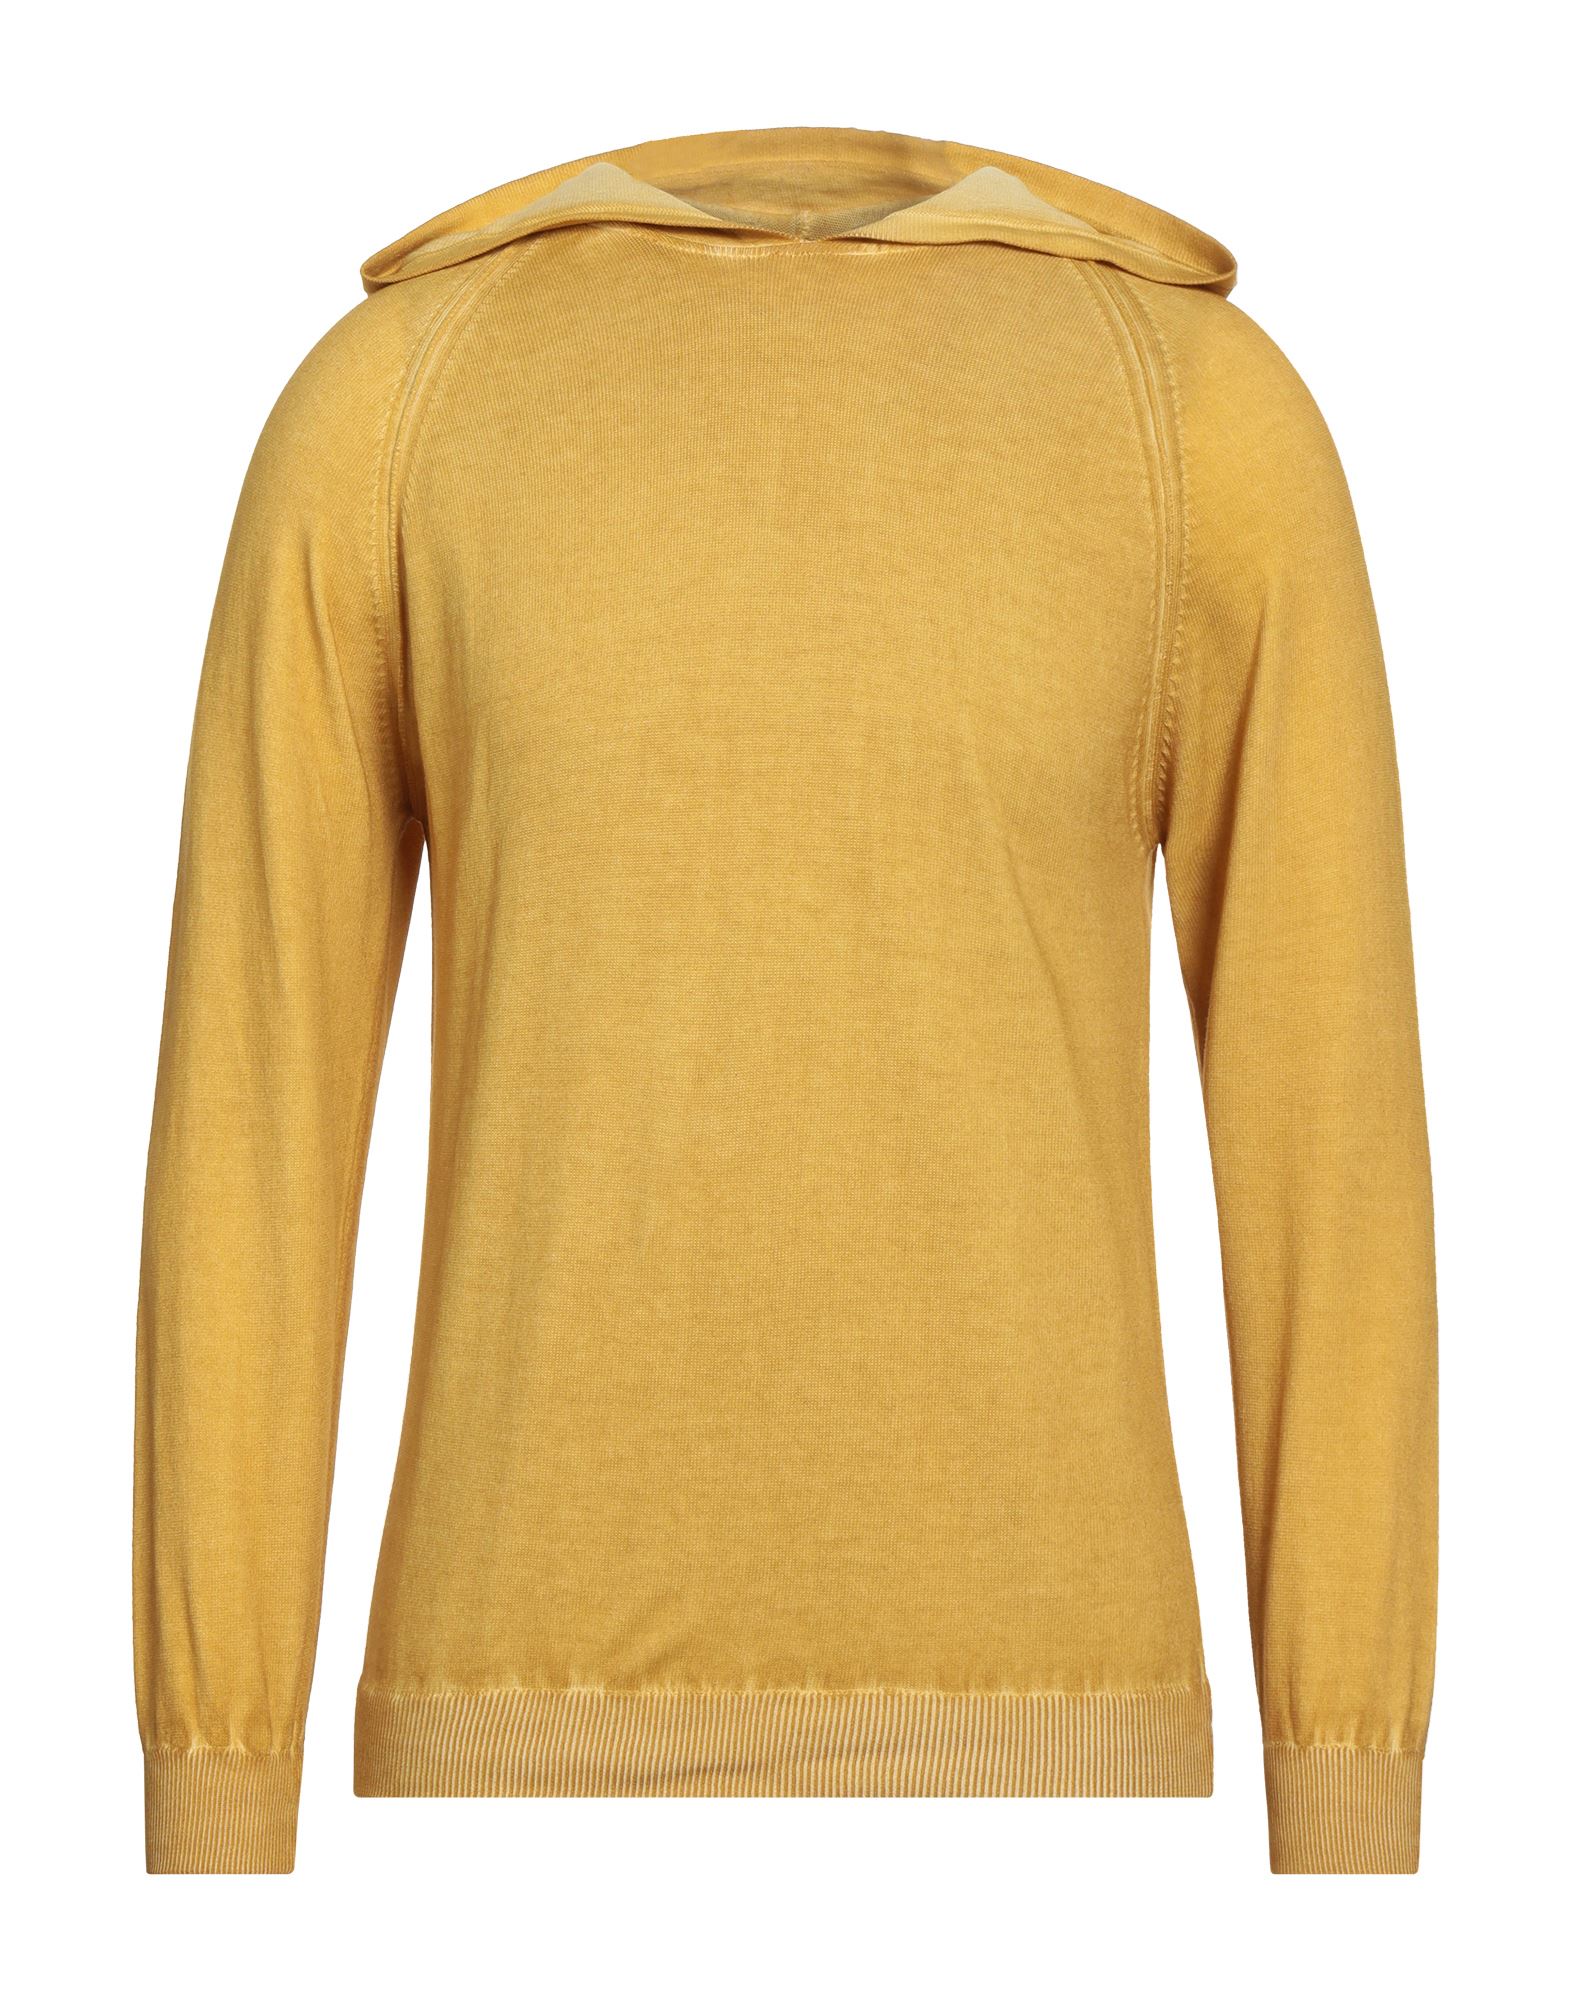 Grey Daniele Alessandrini Sweaters In Yellow